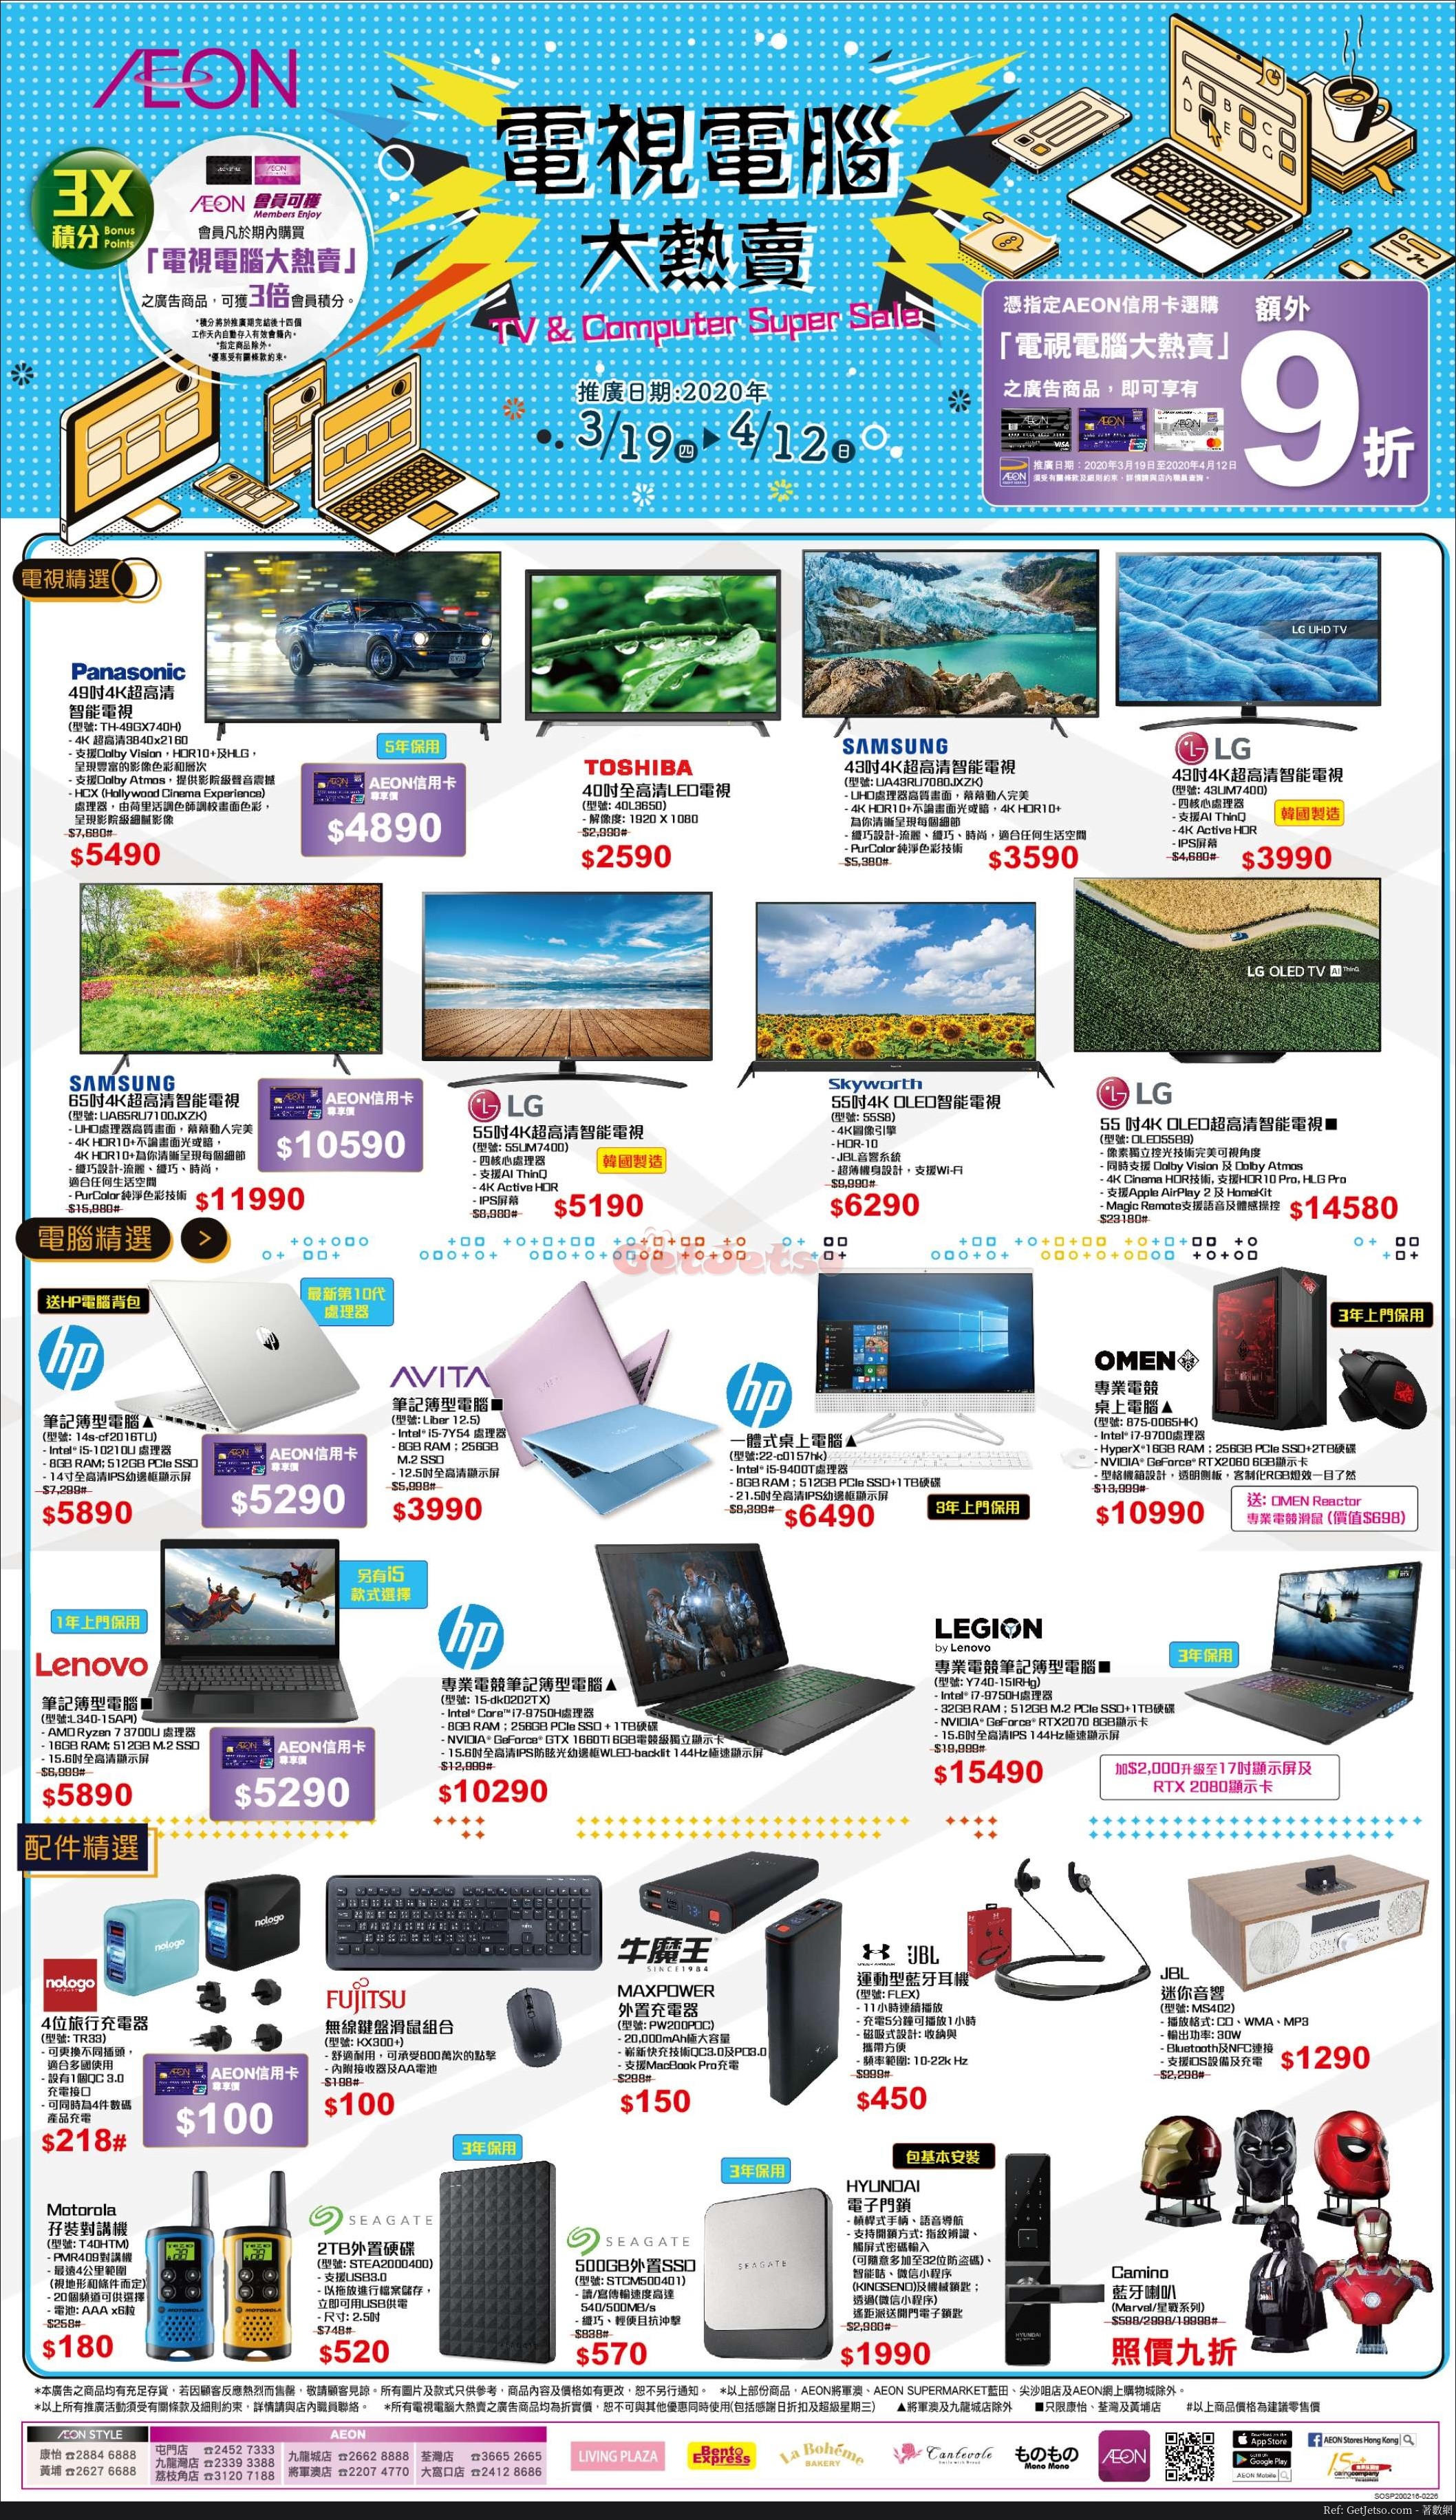 AEON 電視電腦減價優惠(至20年4月12日)圖片1